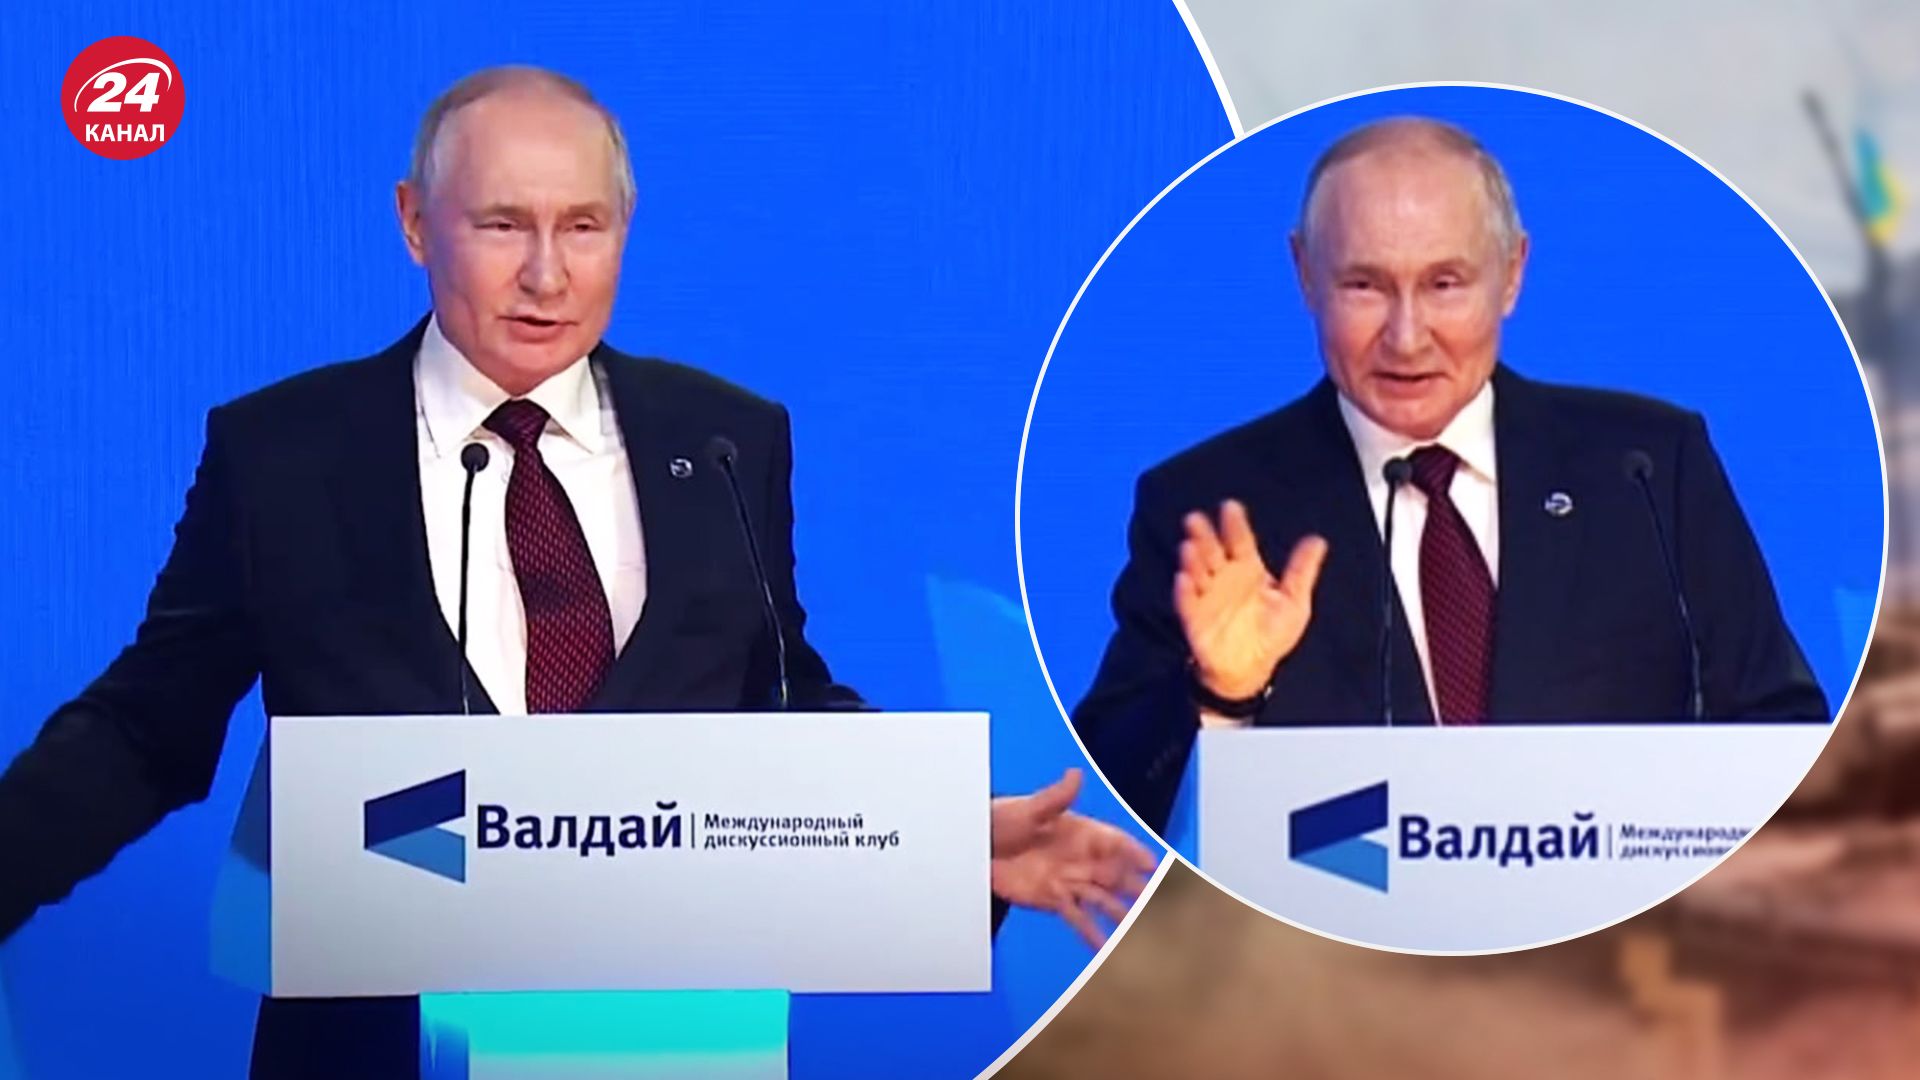 Во время выступления 5 октября на Валдае Путин активно жестикулировал и кашлял, что уже стало привычным